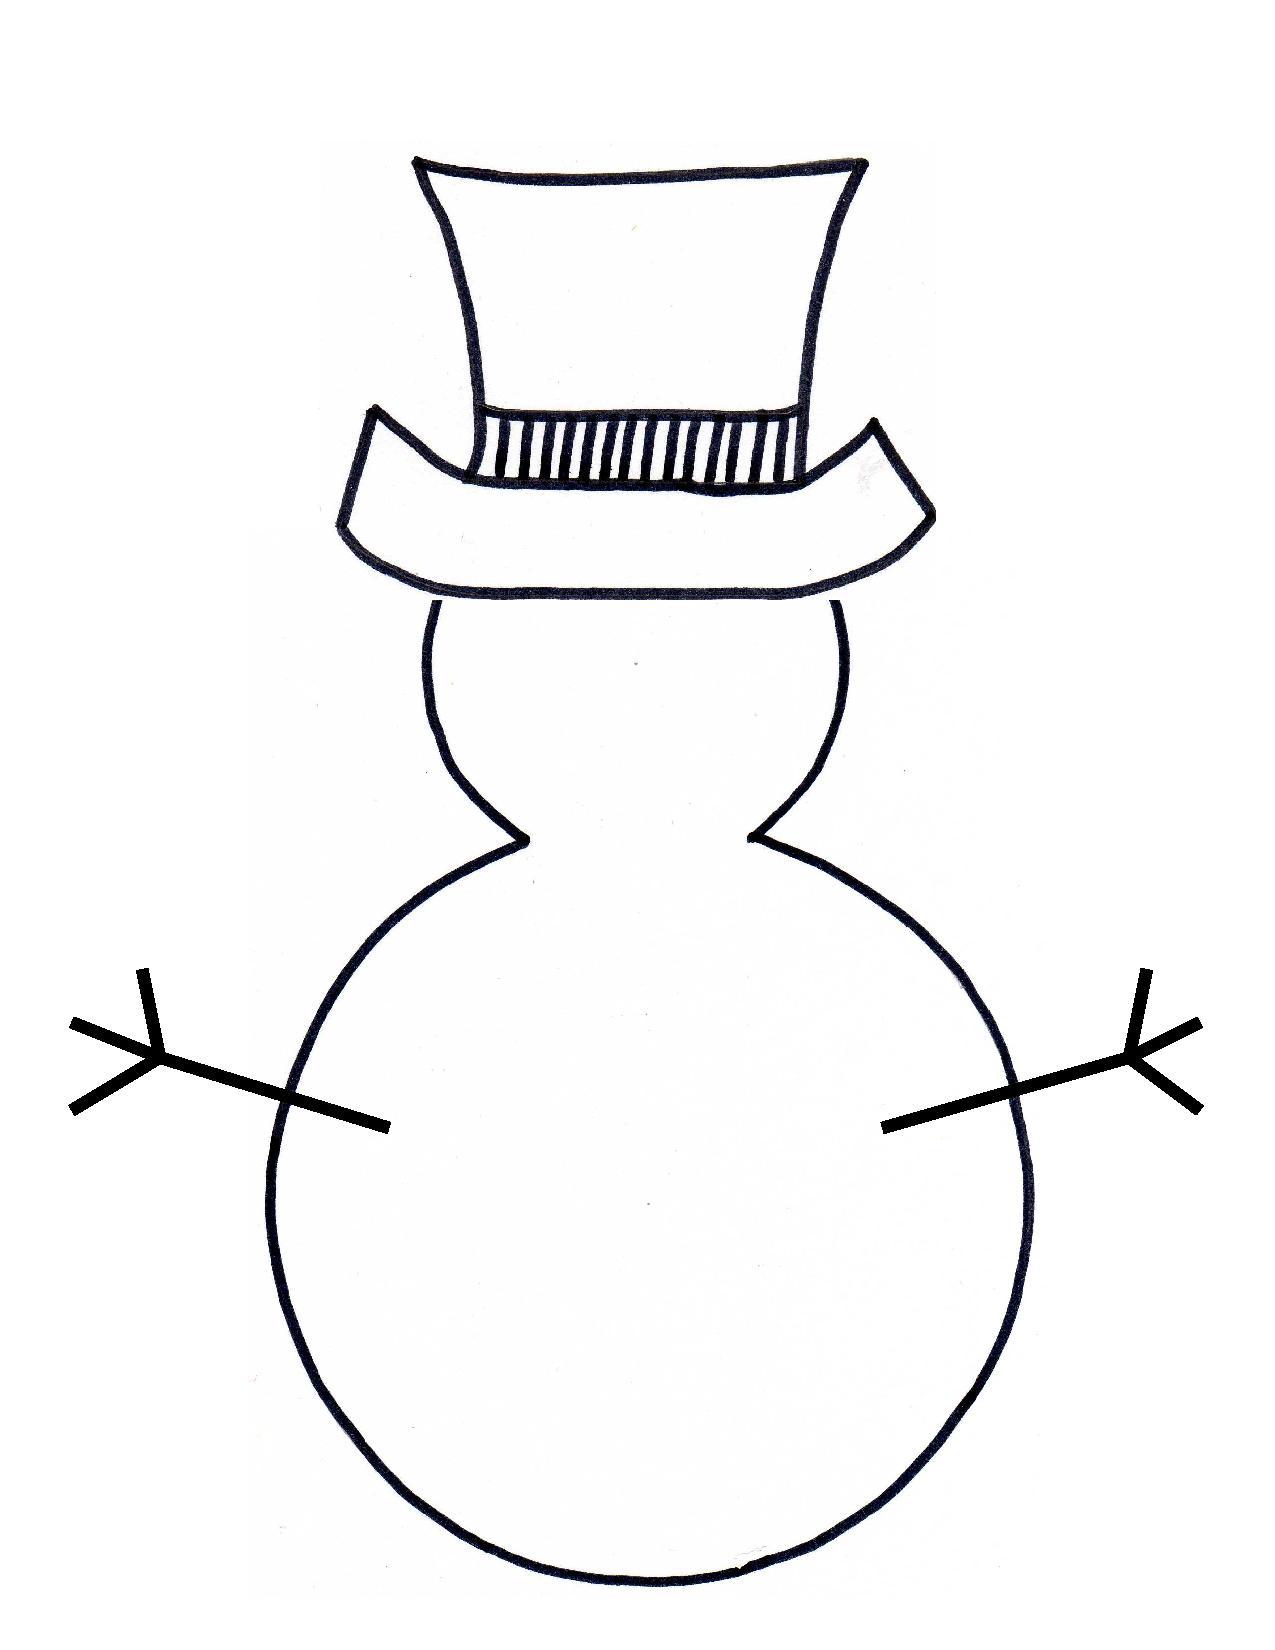 snowman-outline-clipart-best